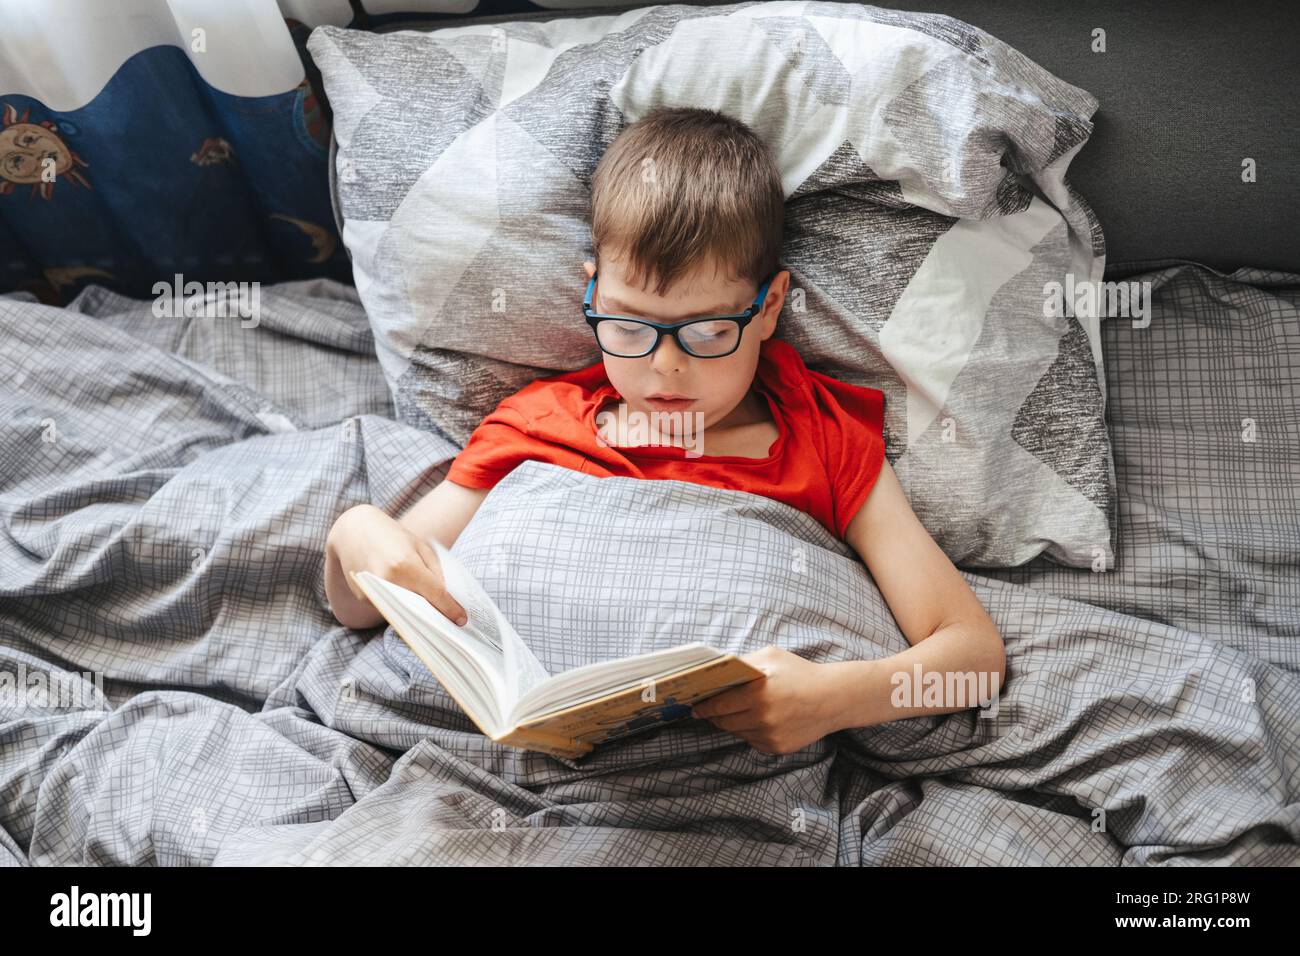 chico con gafas se encuentra en una cama debajo de una manta y lee un libro, vista superior. Un niño en edad de escuela primaria está leyendo un libro en su cama. Foto de stock